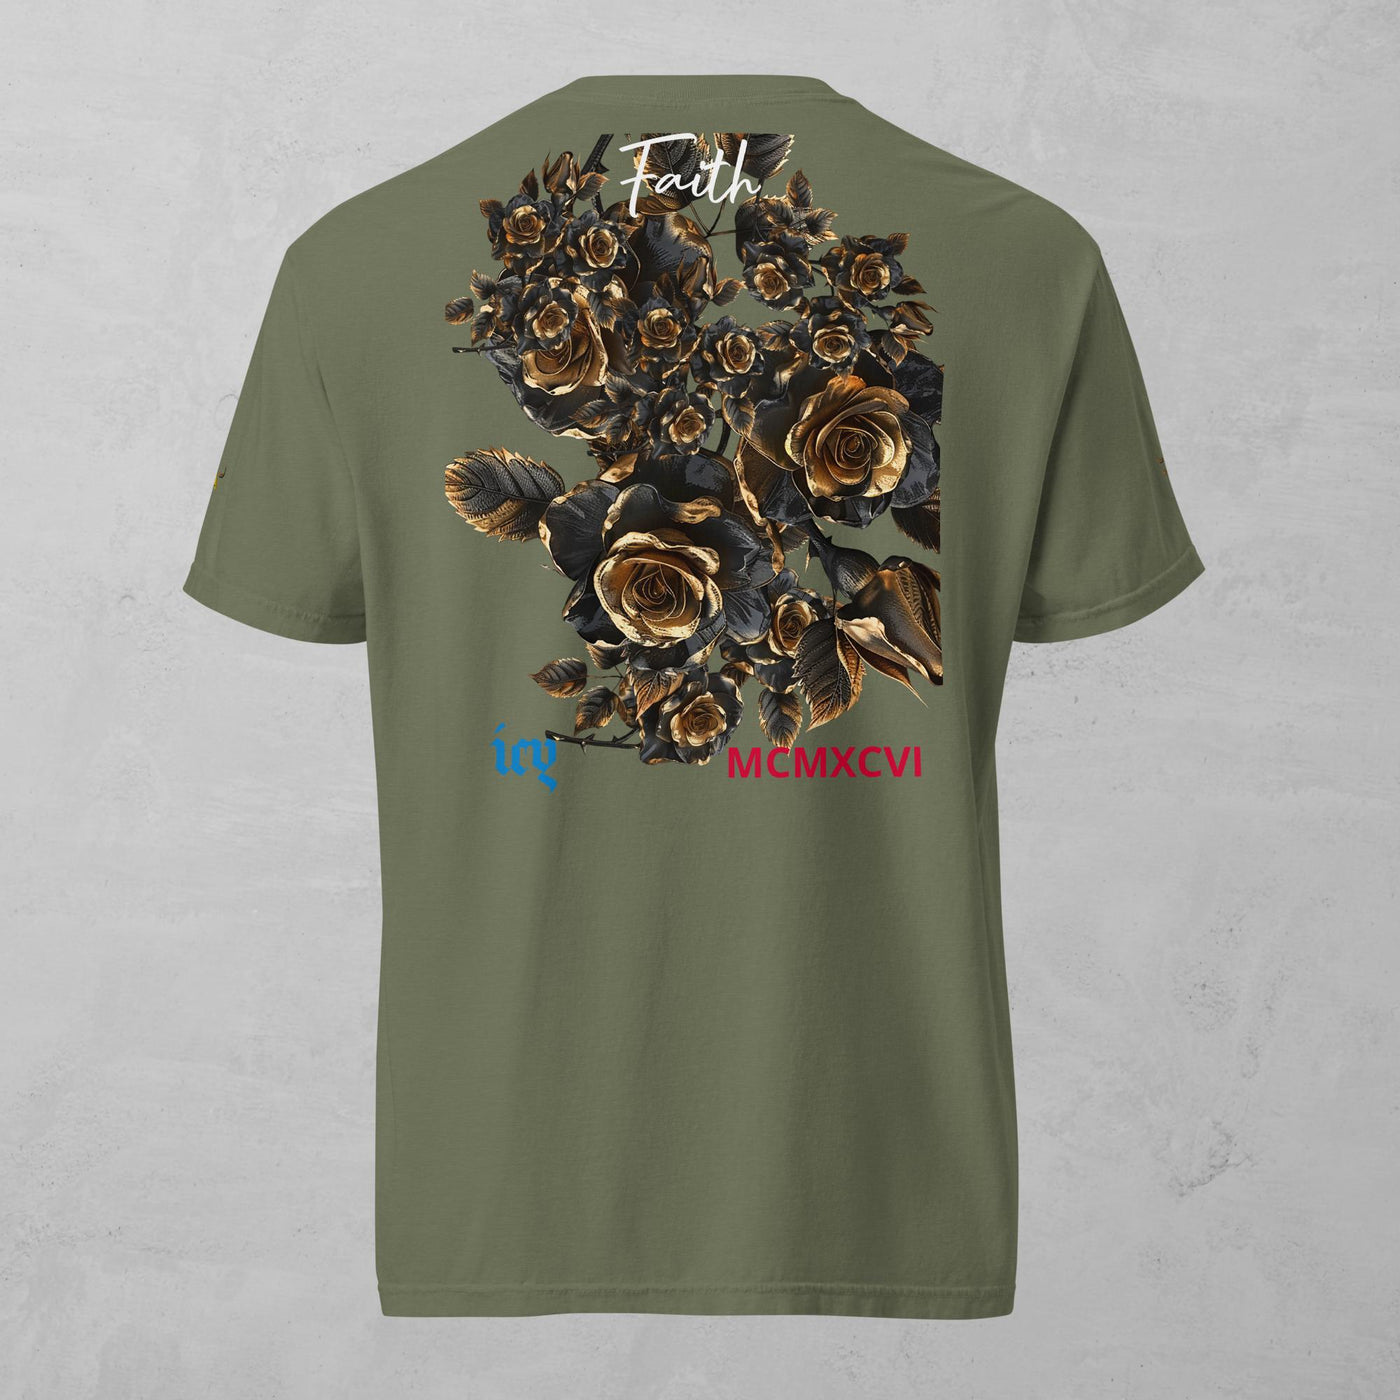 J.A Faith Gold Roses- Men's heavyweight t-shirt